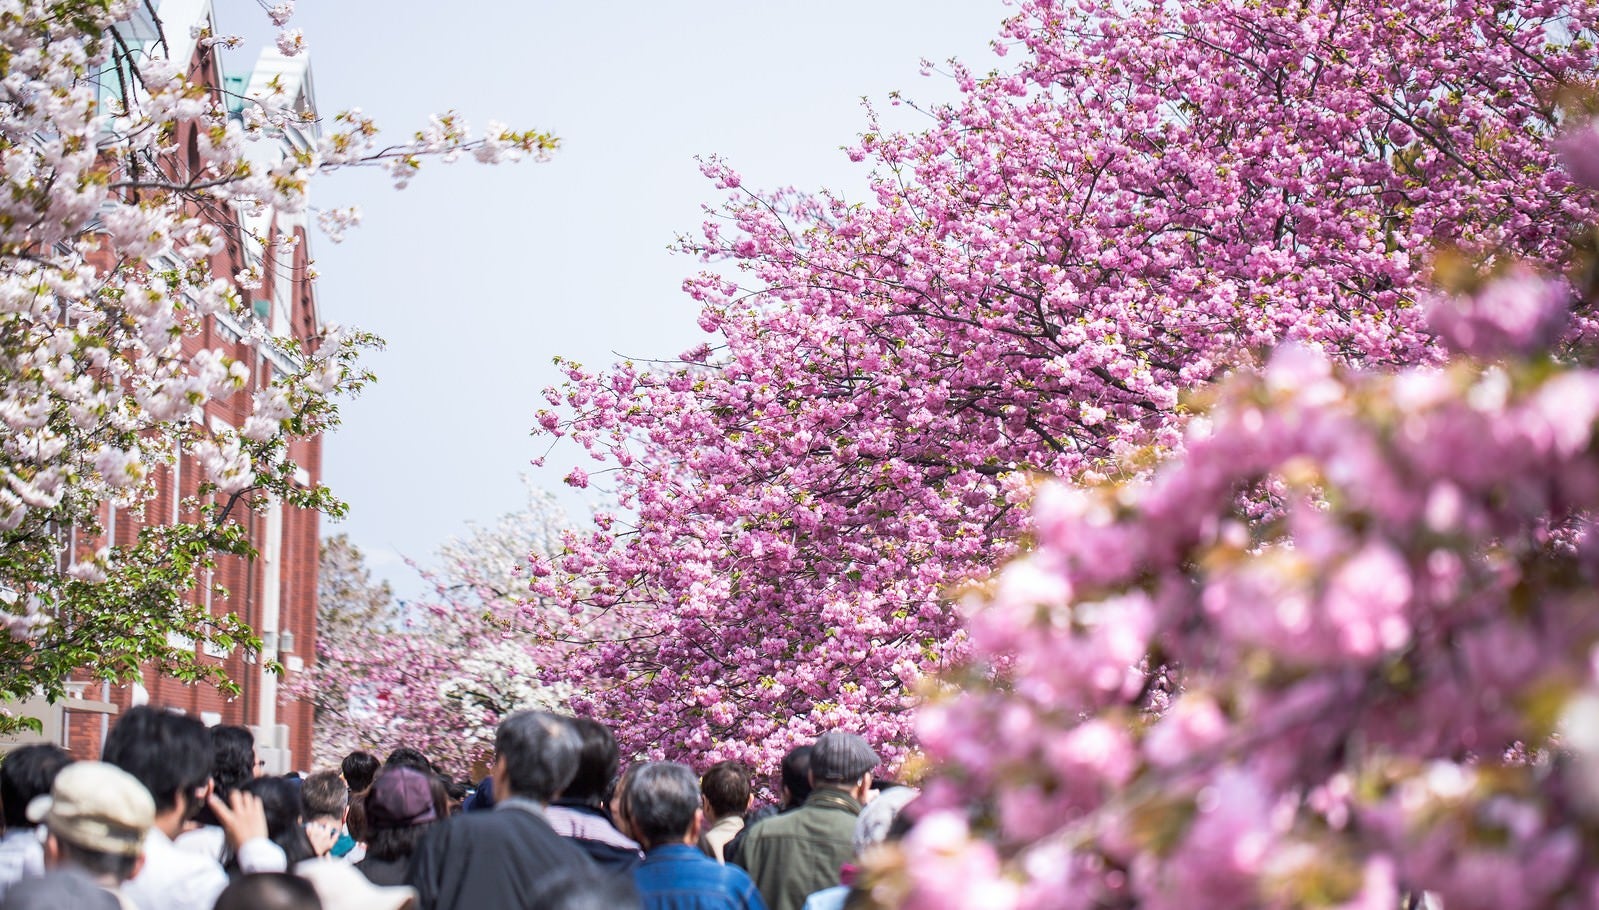 「造幣局桜の通り抜け」の写真